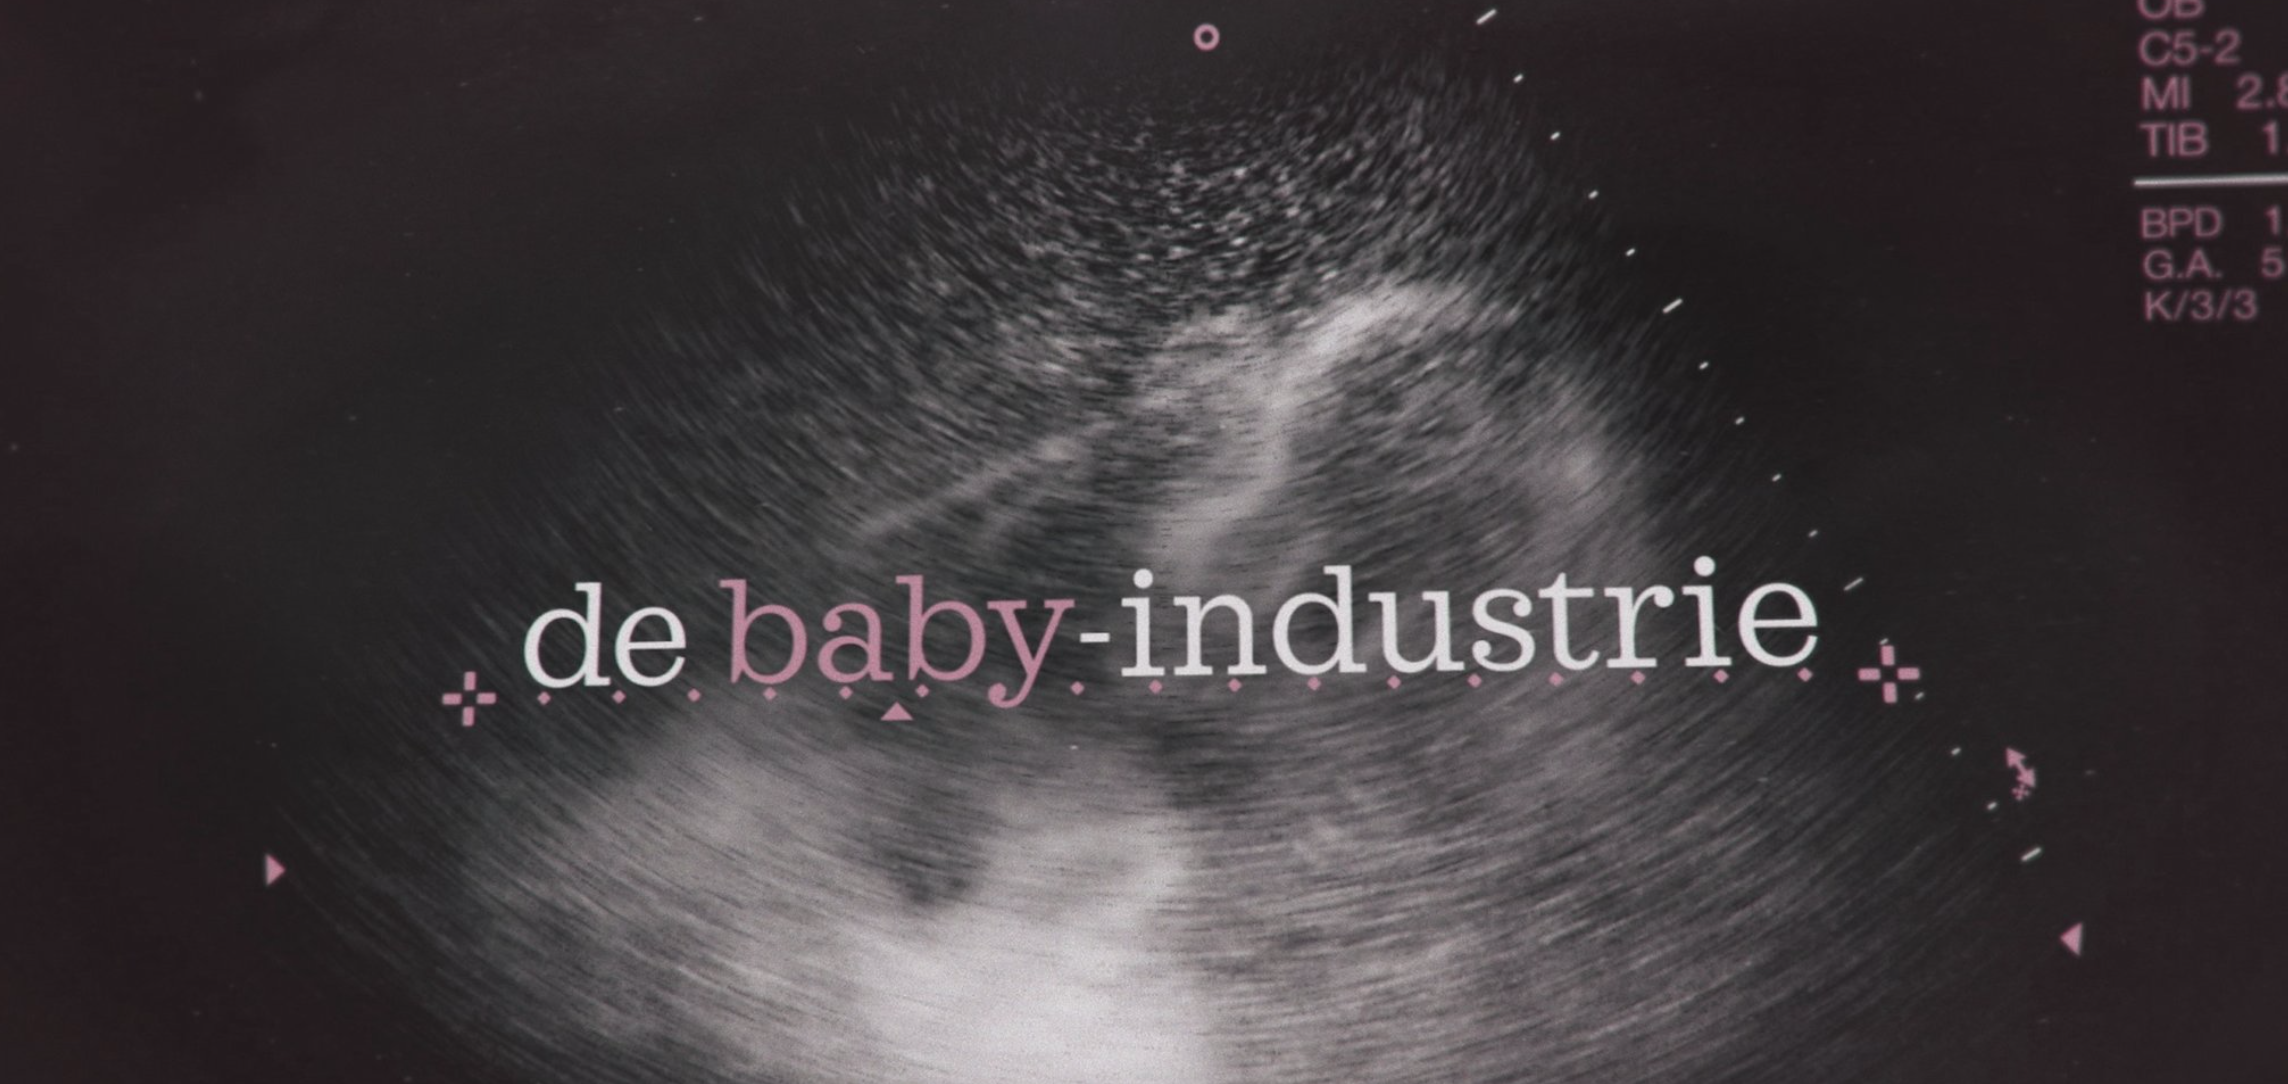 De baby-industrie